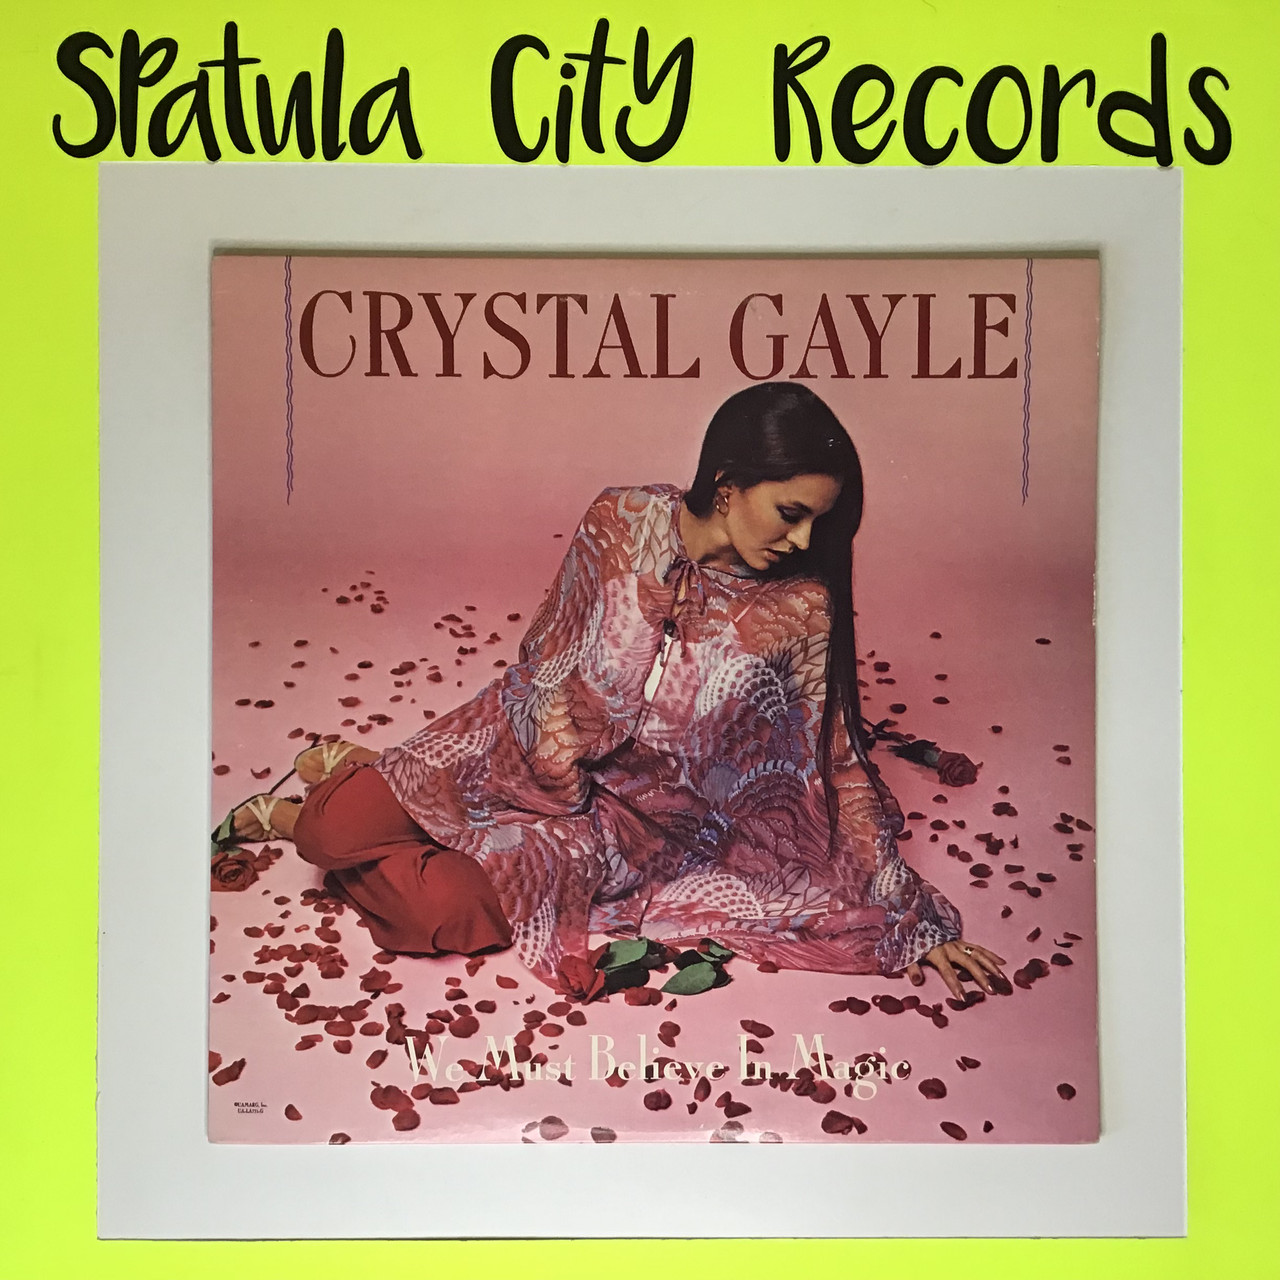 Crystal Gayle - We Must Believe in Magic - vinyl record album LP